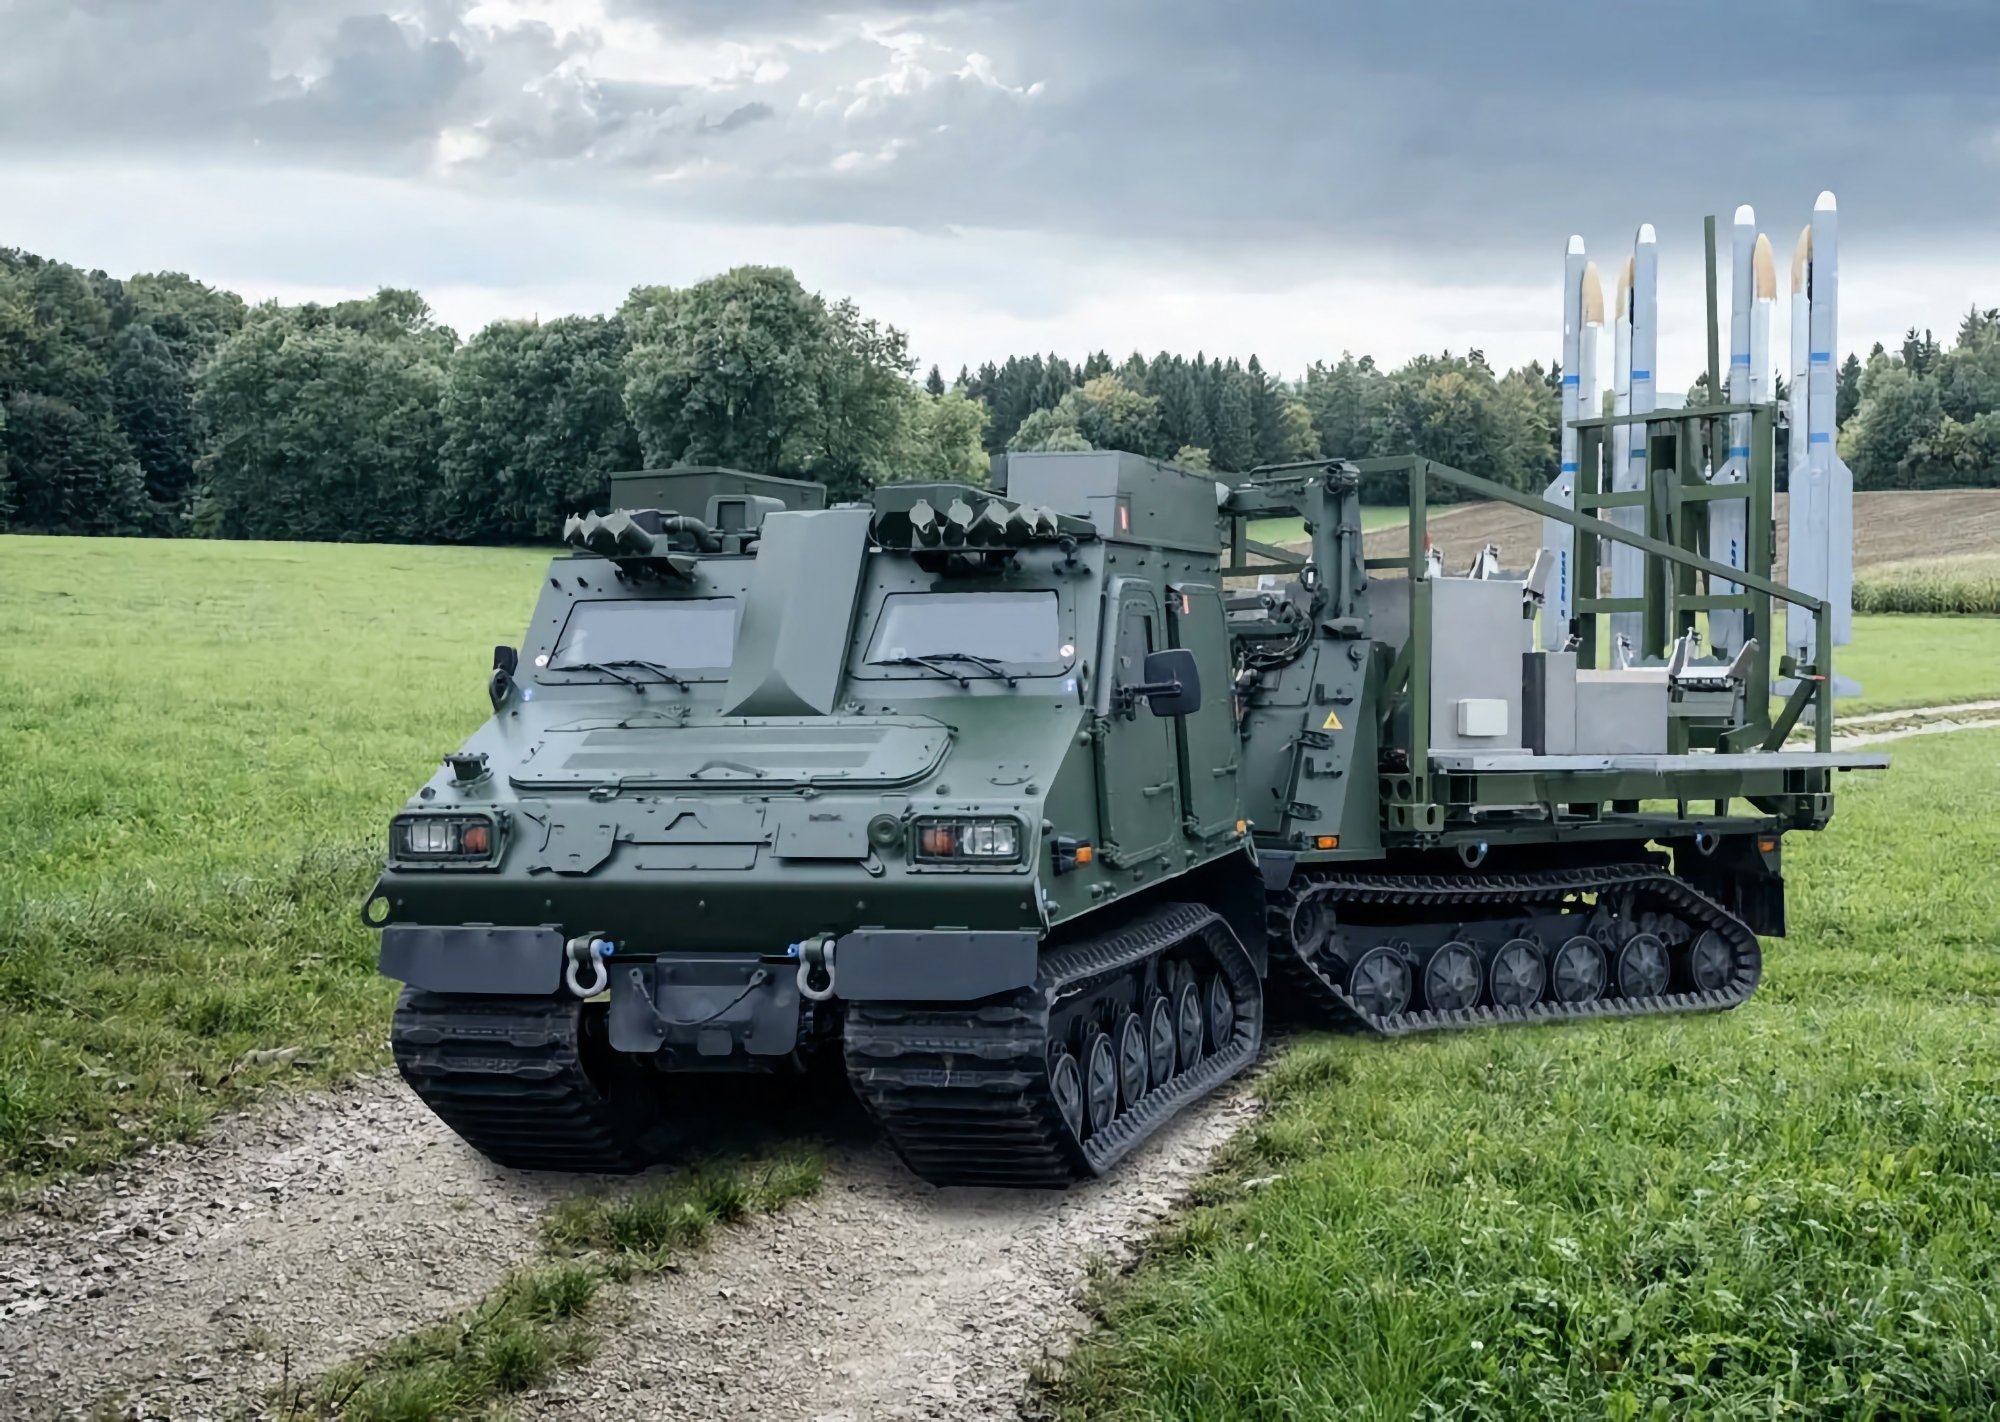 2 IRIS-T SLS SAM lanceerinrichtingen, 8 PzH 2000 SAU voor reserveonderdelen en 4 HX81 tankwagens: Duitsland heeft Oekraïne een nieuw wapenpakket overhandigd